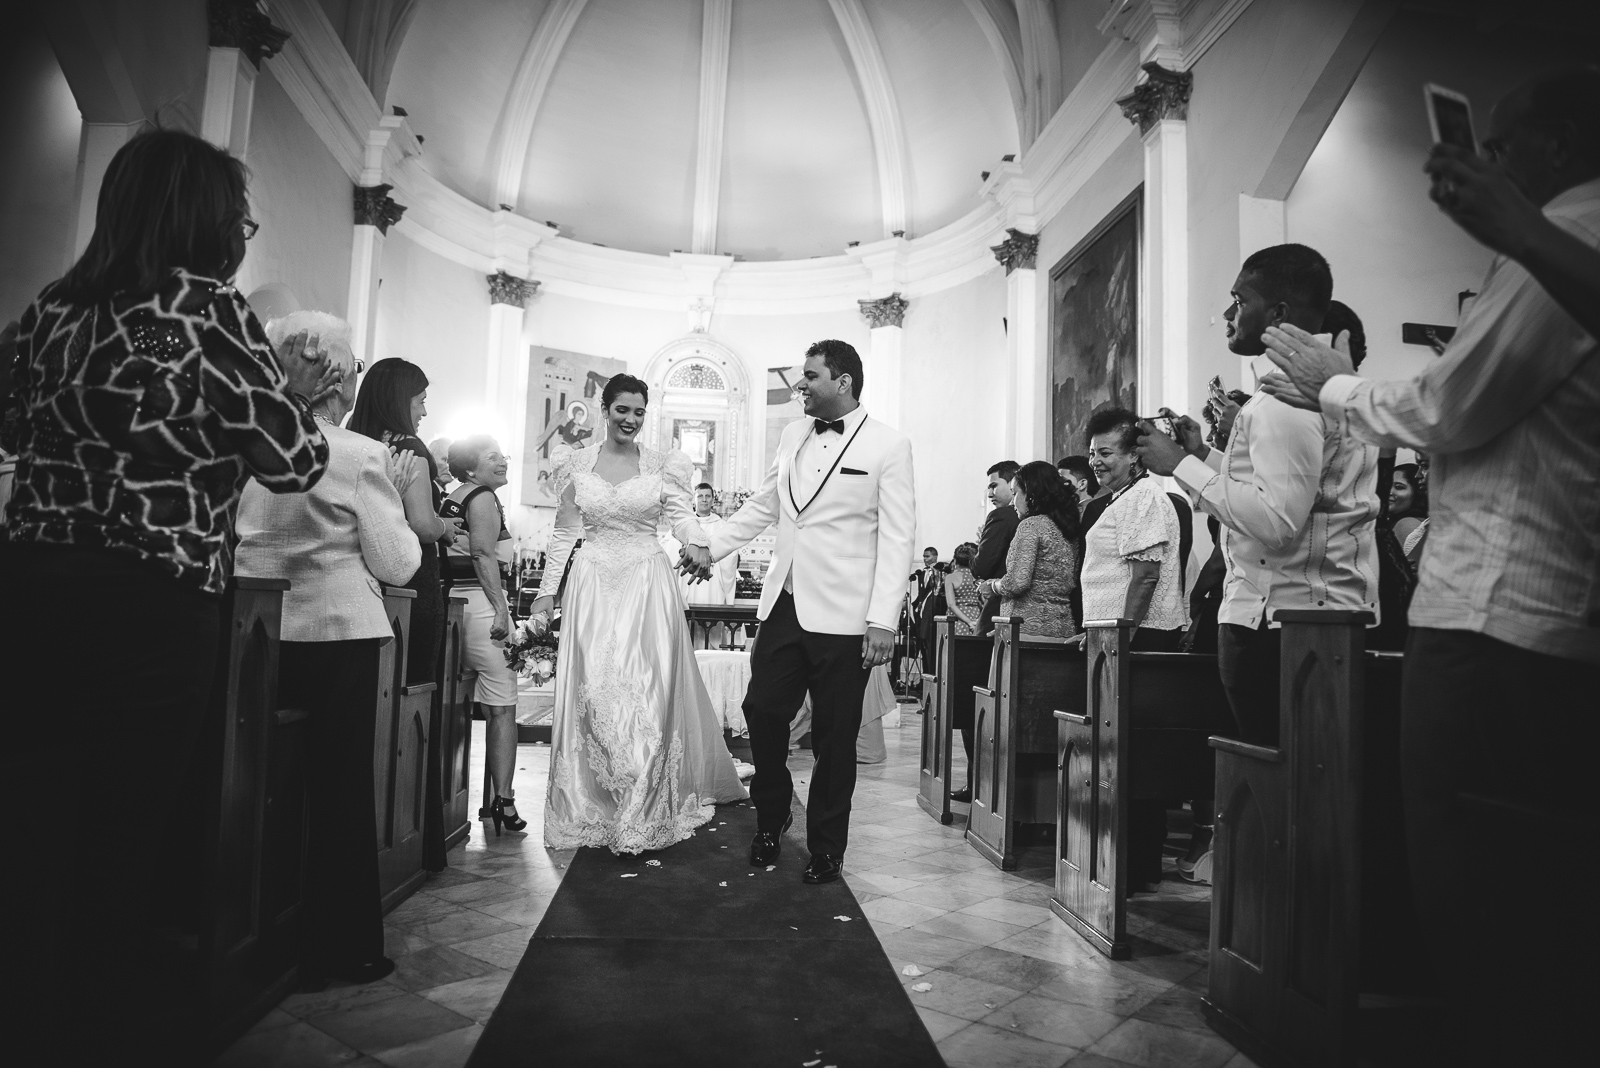 Ceremonia y recepcion de la boda de Lyonella y Carlos en la iglesia nuestra señora de la altagracia en Santo Domingo, República Dominicana